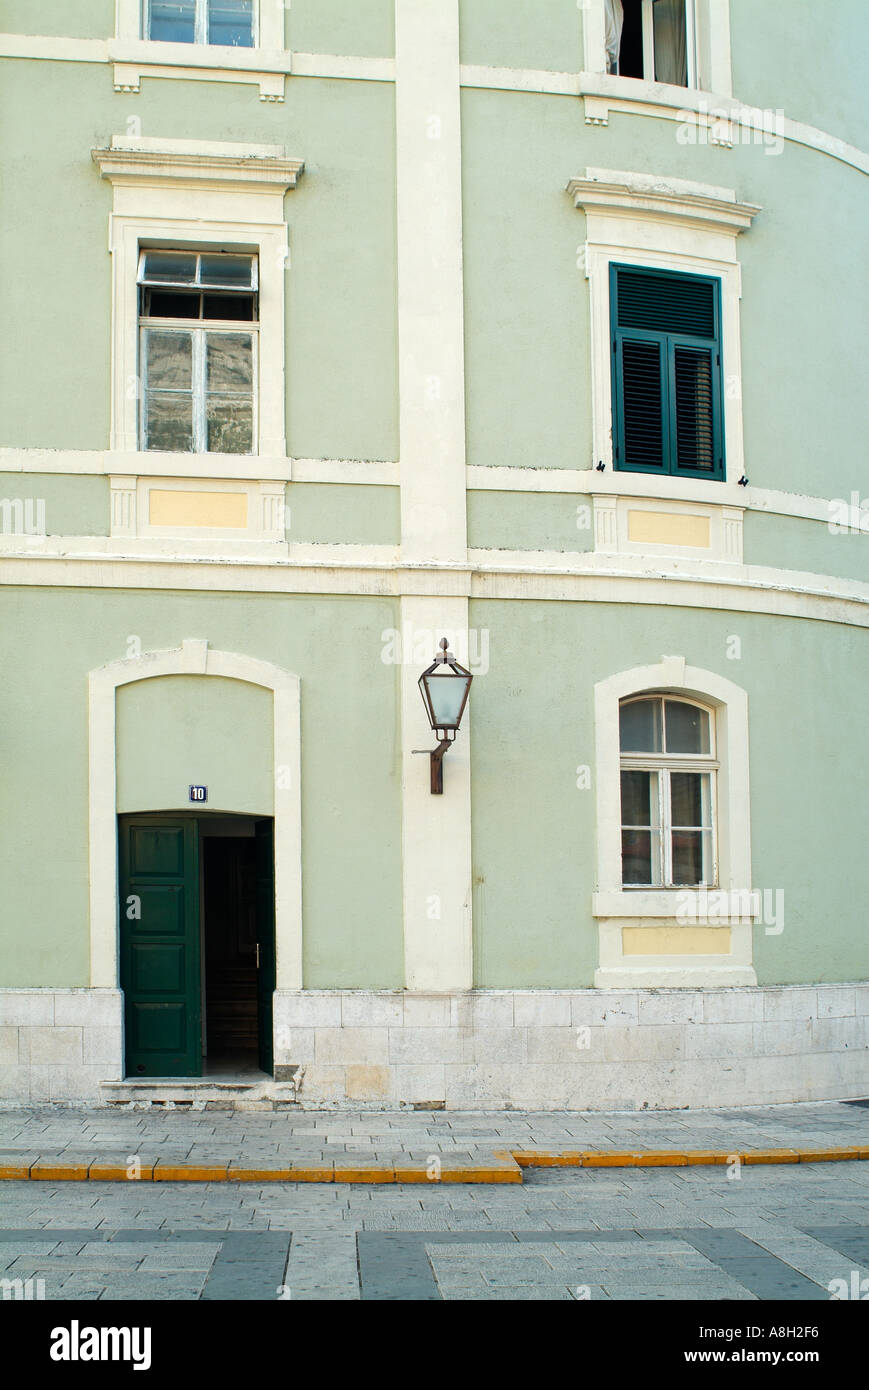 Gebäude in der Stadt Zentrum von Makarska typisch für die Architektur dieser Region Dalmatien, Dalmatien, Kroatien. Stockfoto